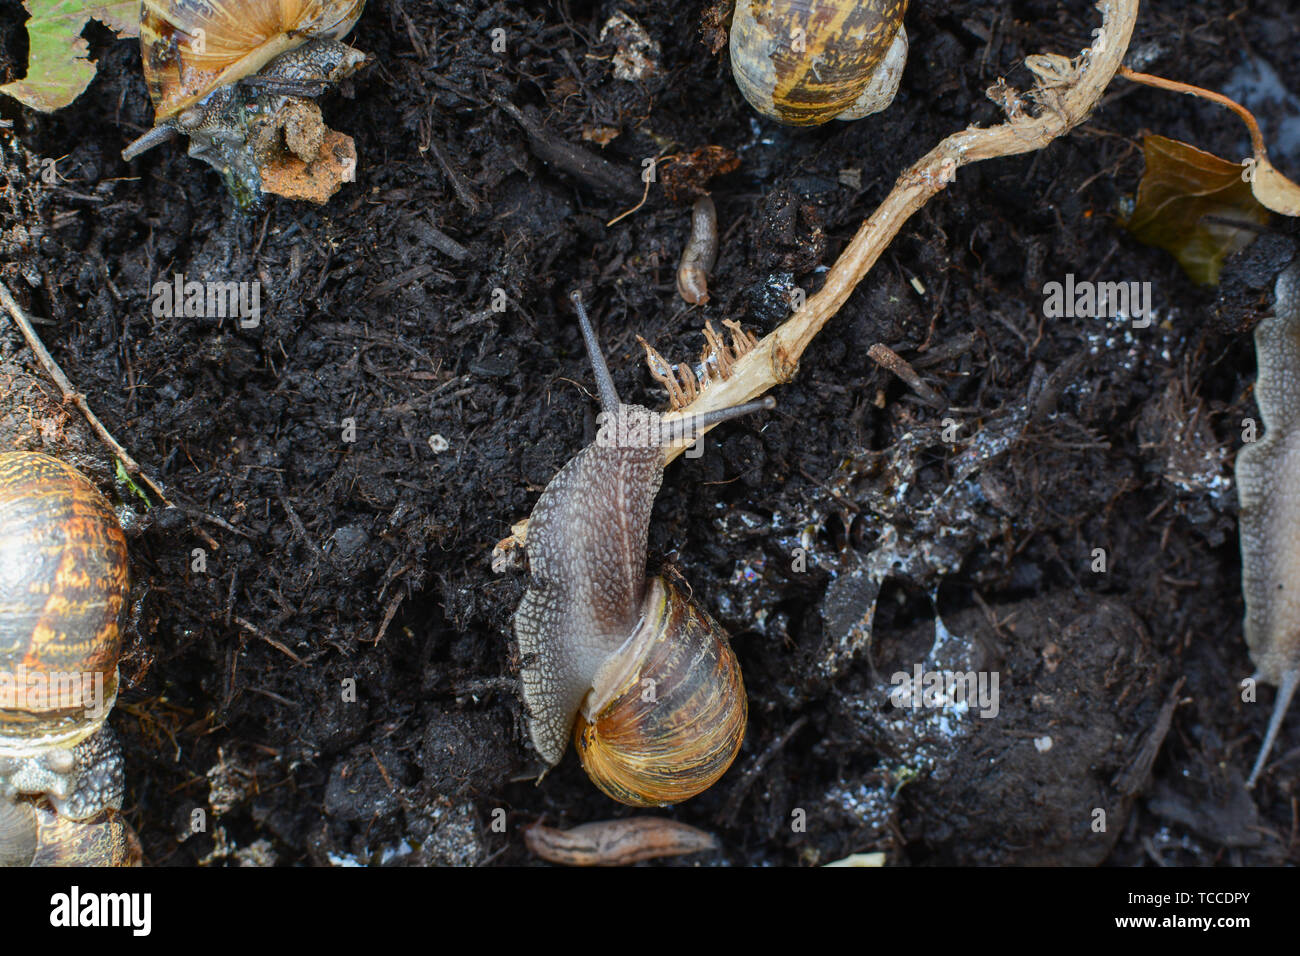 Los caracoles arrastrándose alrededor de barro en el exterior, en un jardín en su entorno natural. Foto de stock